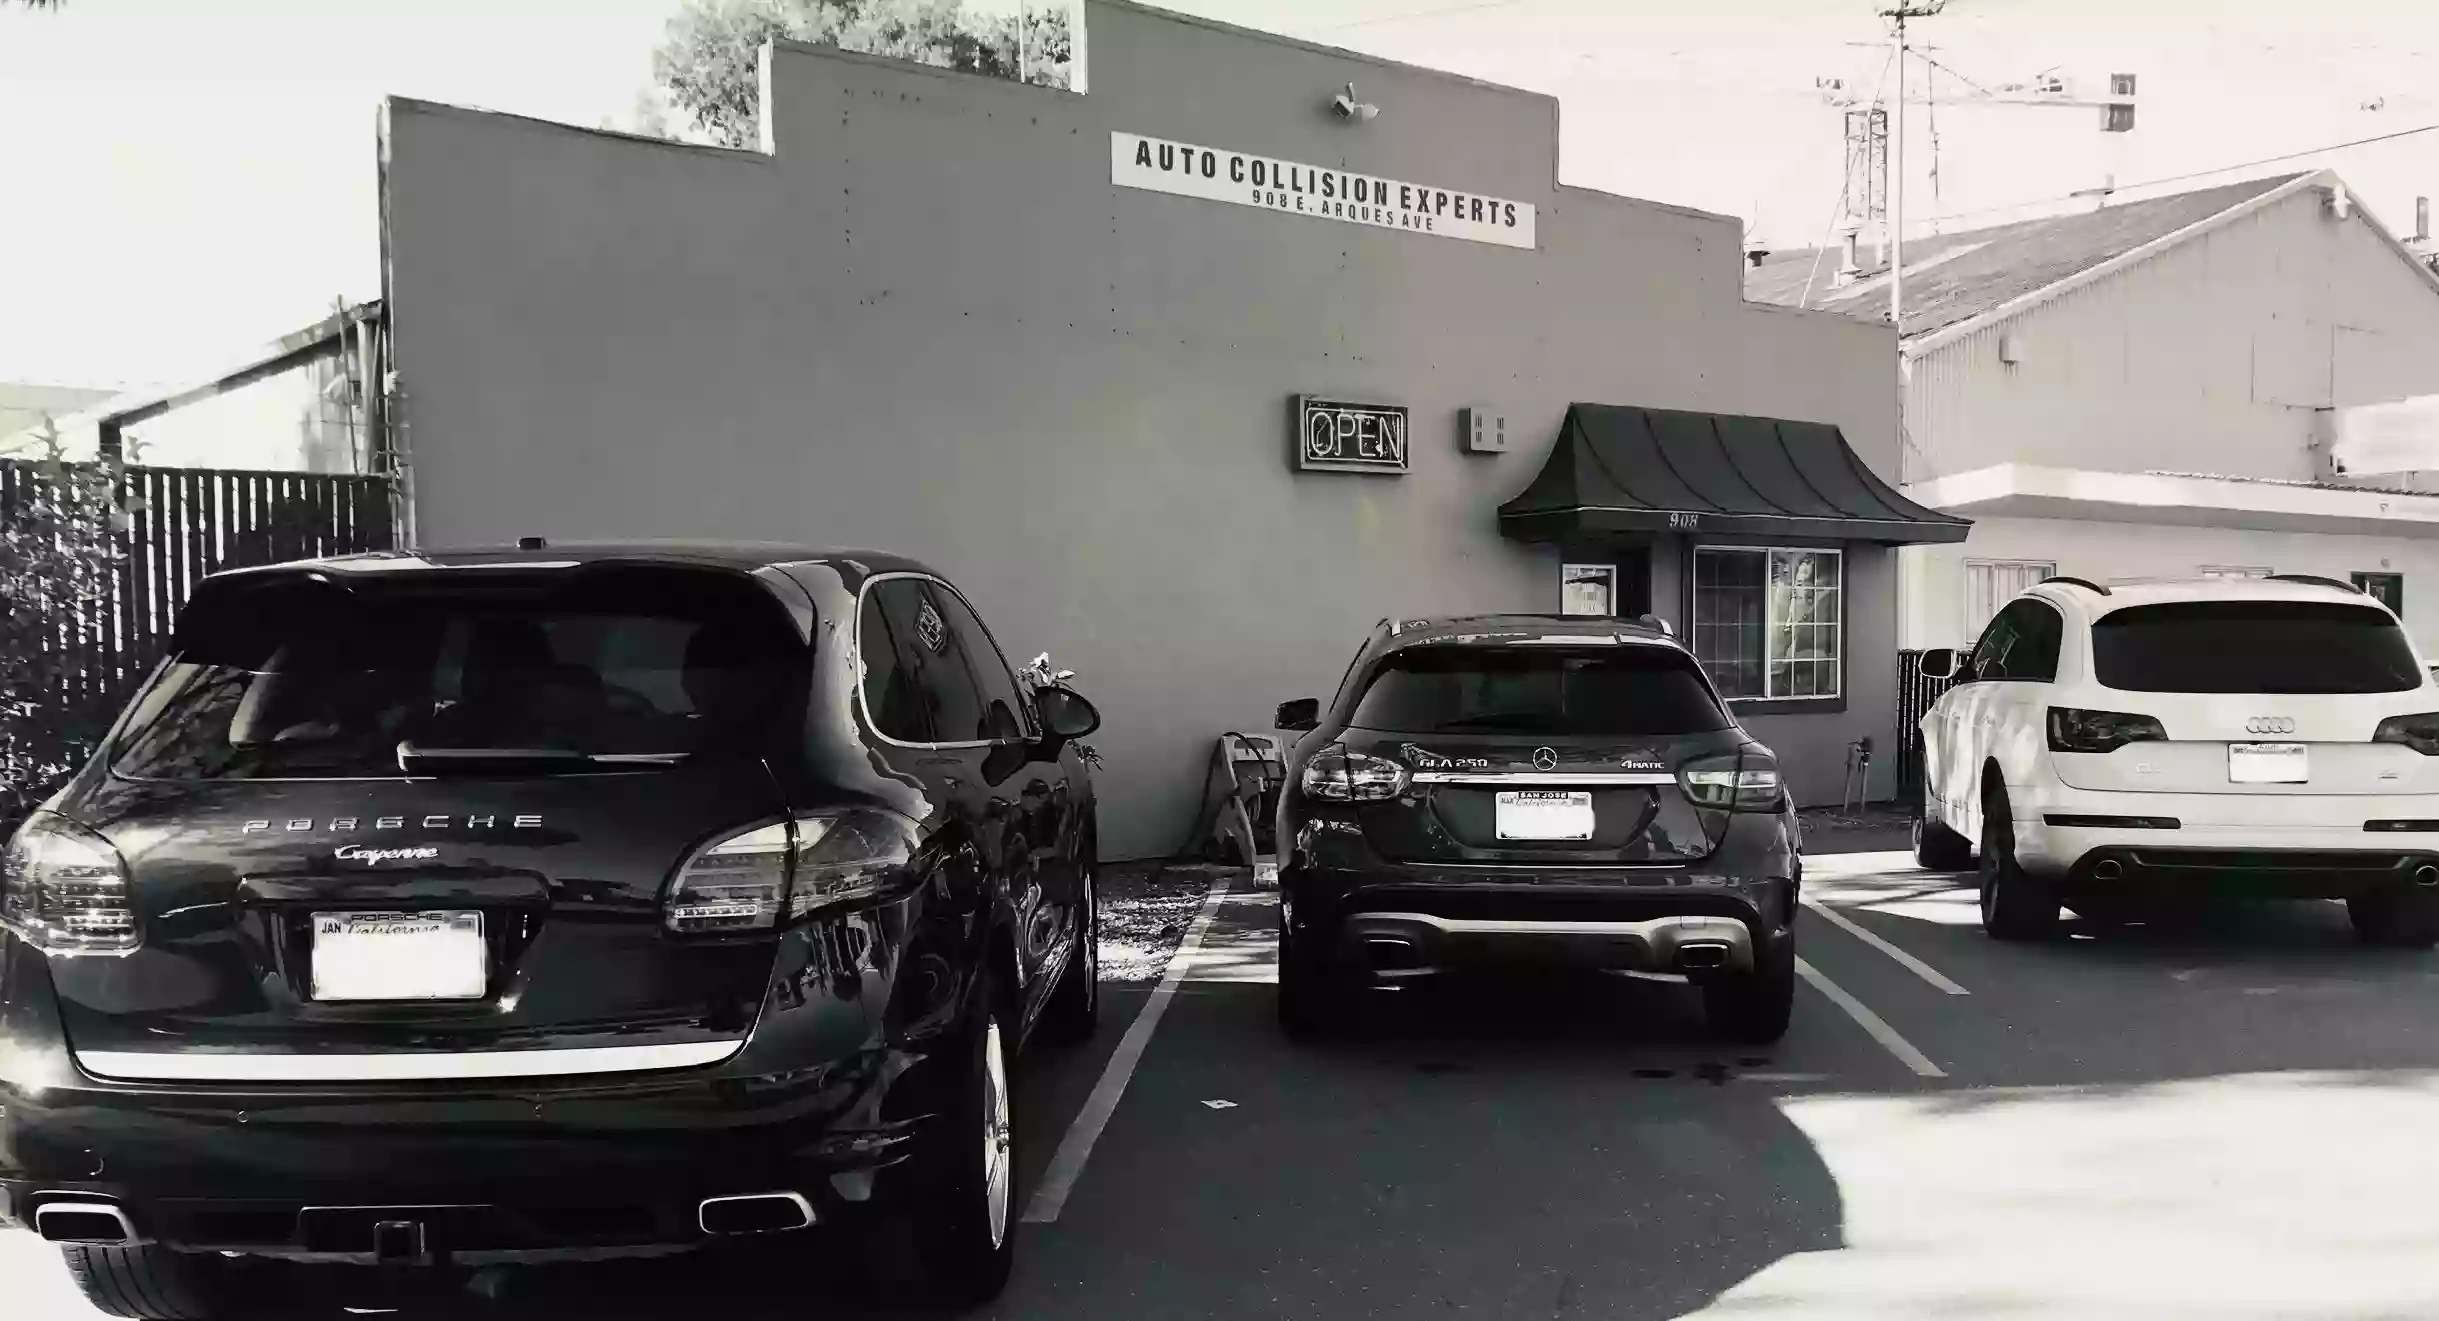 Auto Collision Experts - Auto Body Shops in Sunnyvale CA